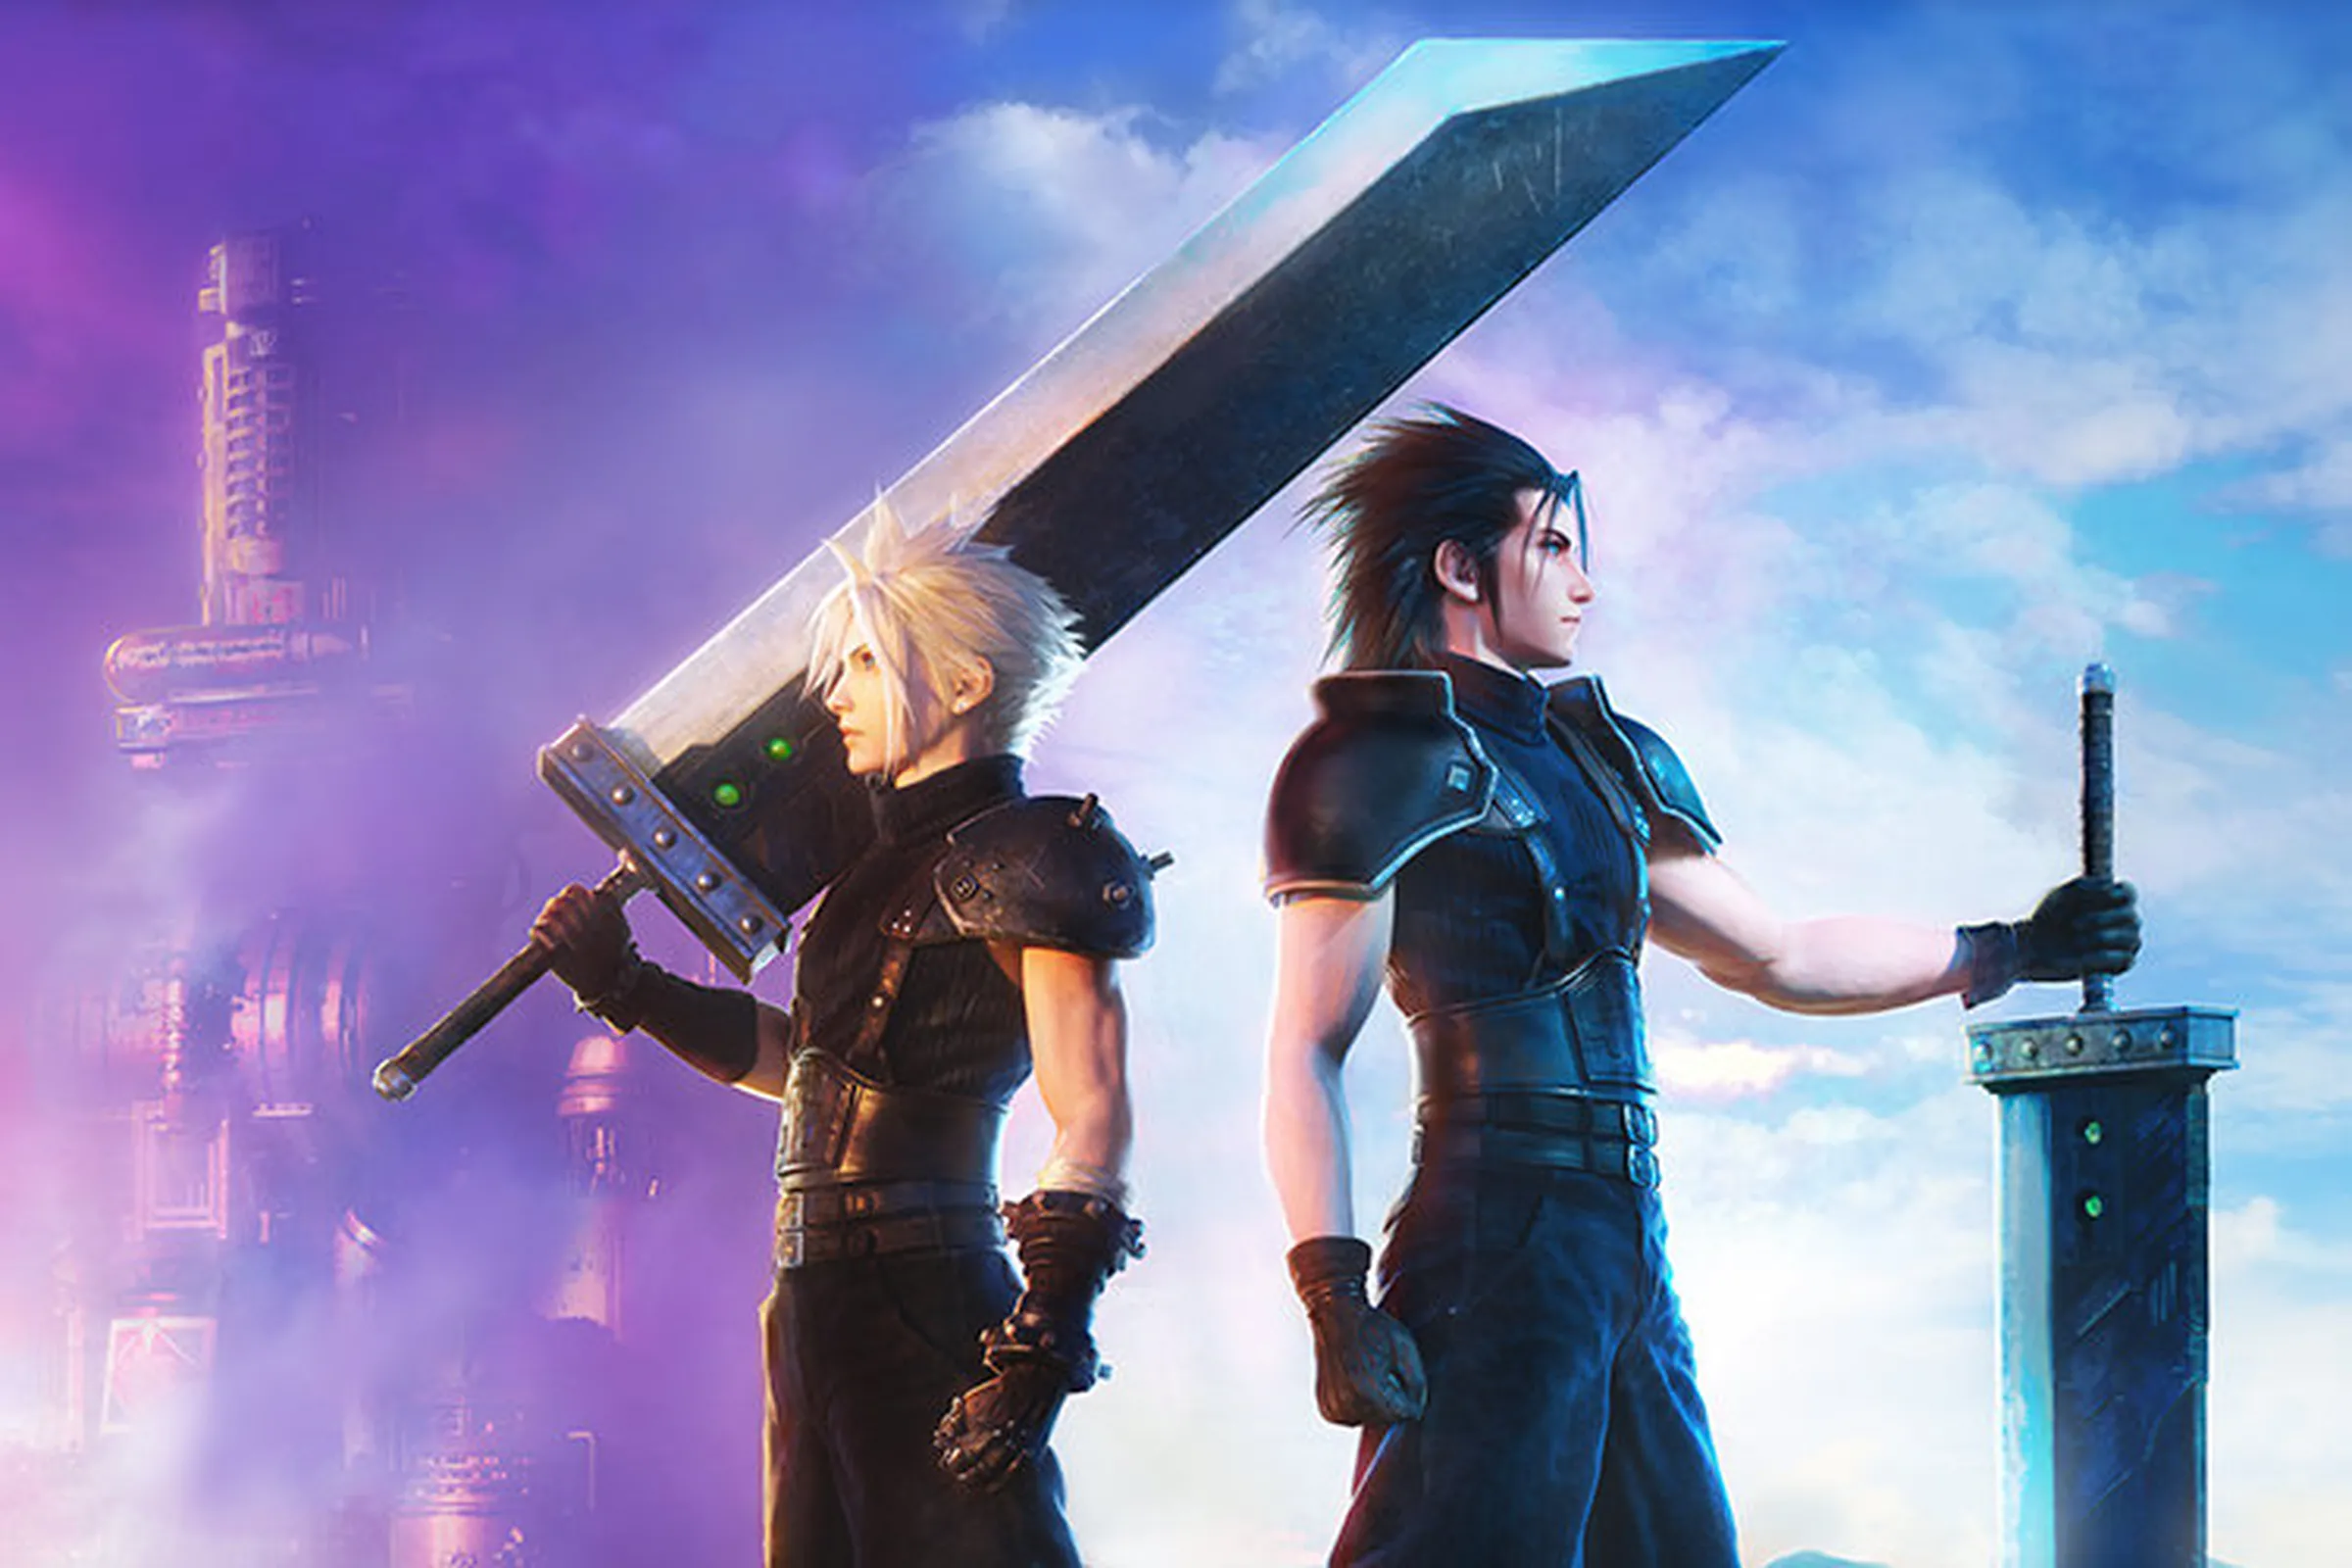 Final Fantasy VII: Ever Crisis - Un nouveau chapitre de la saga sur mobile